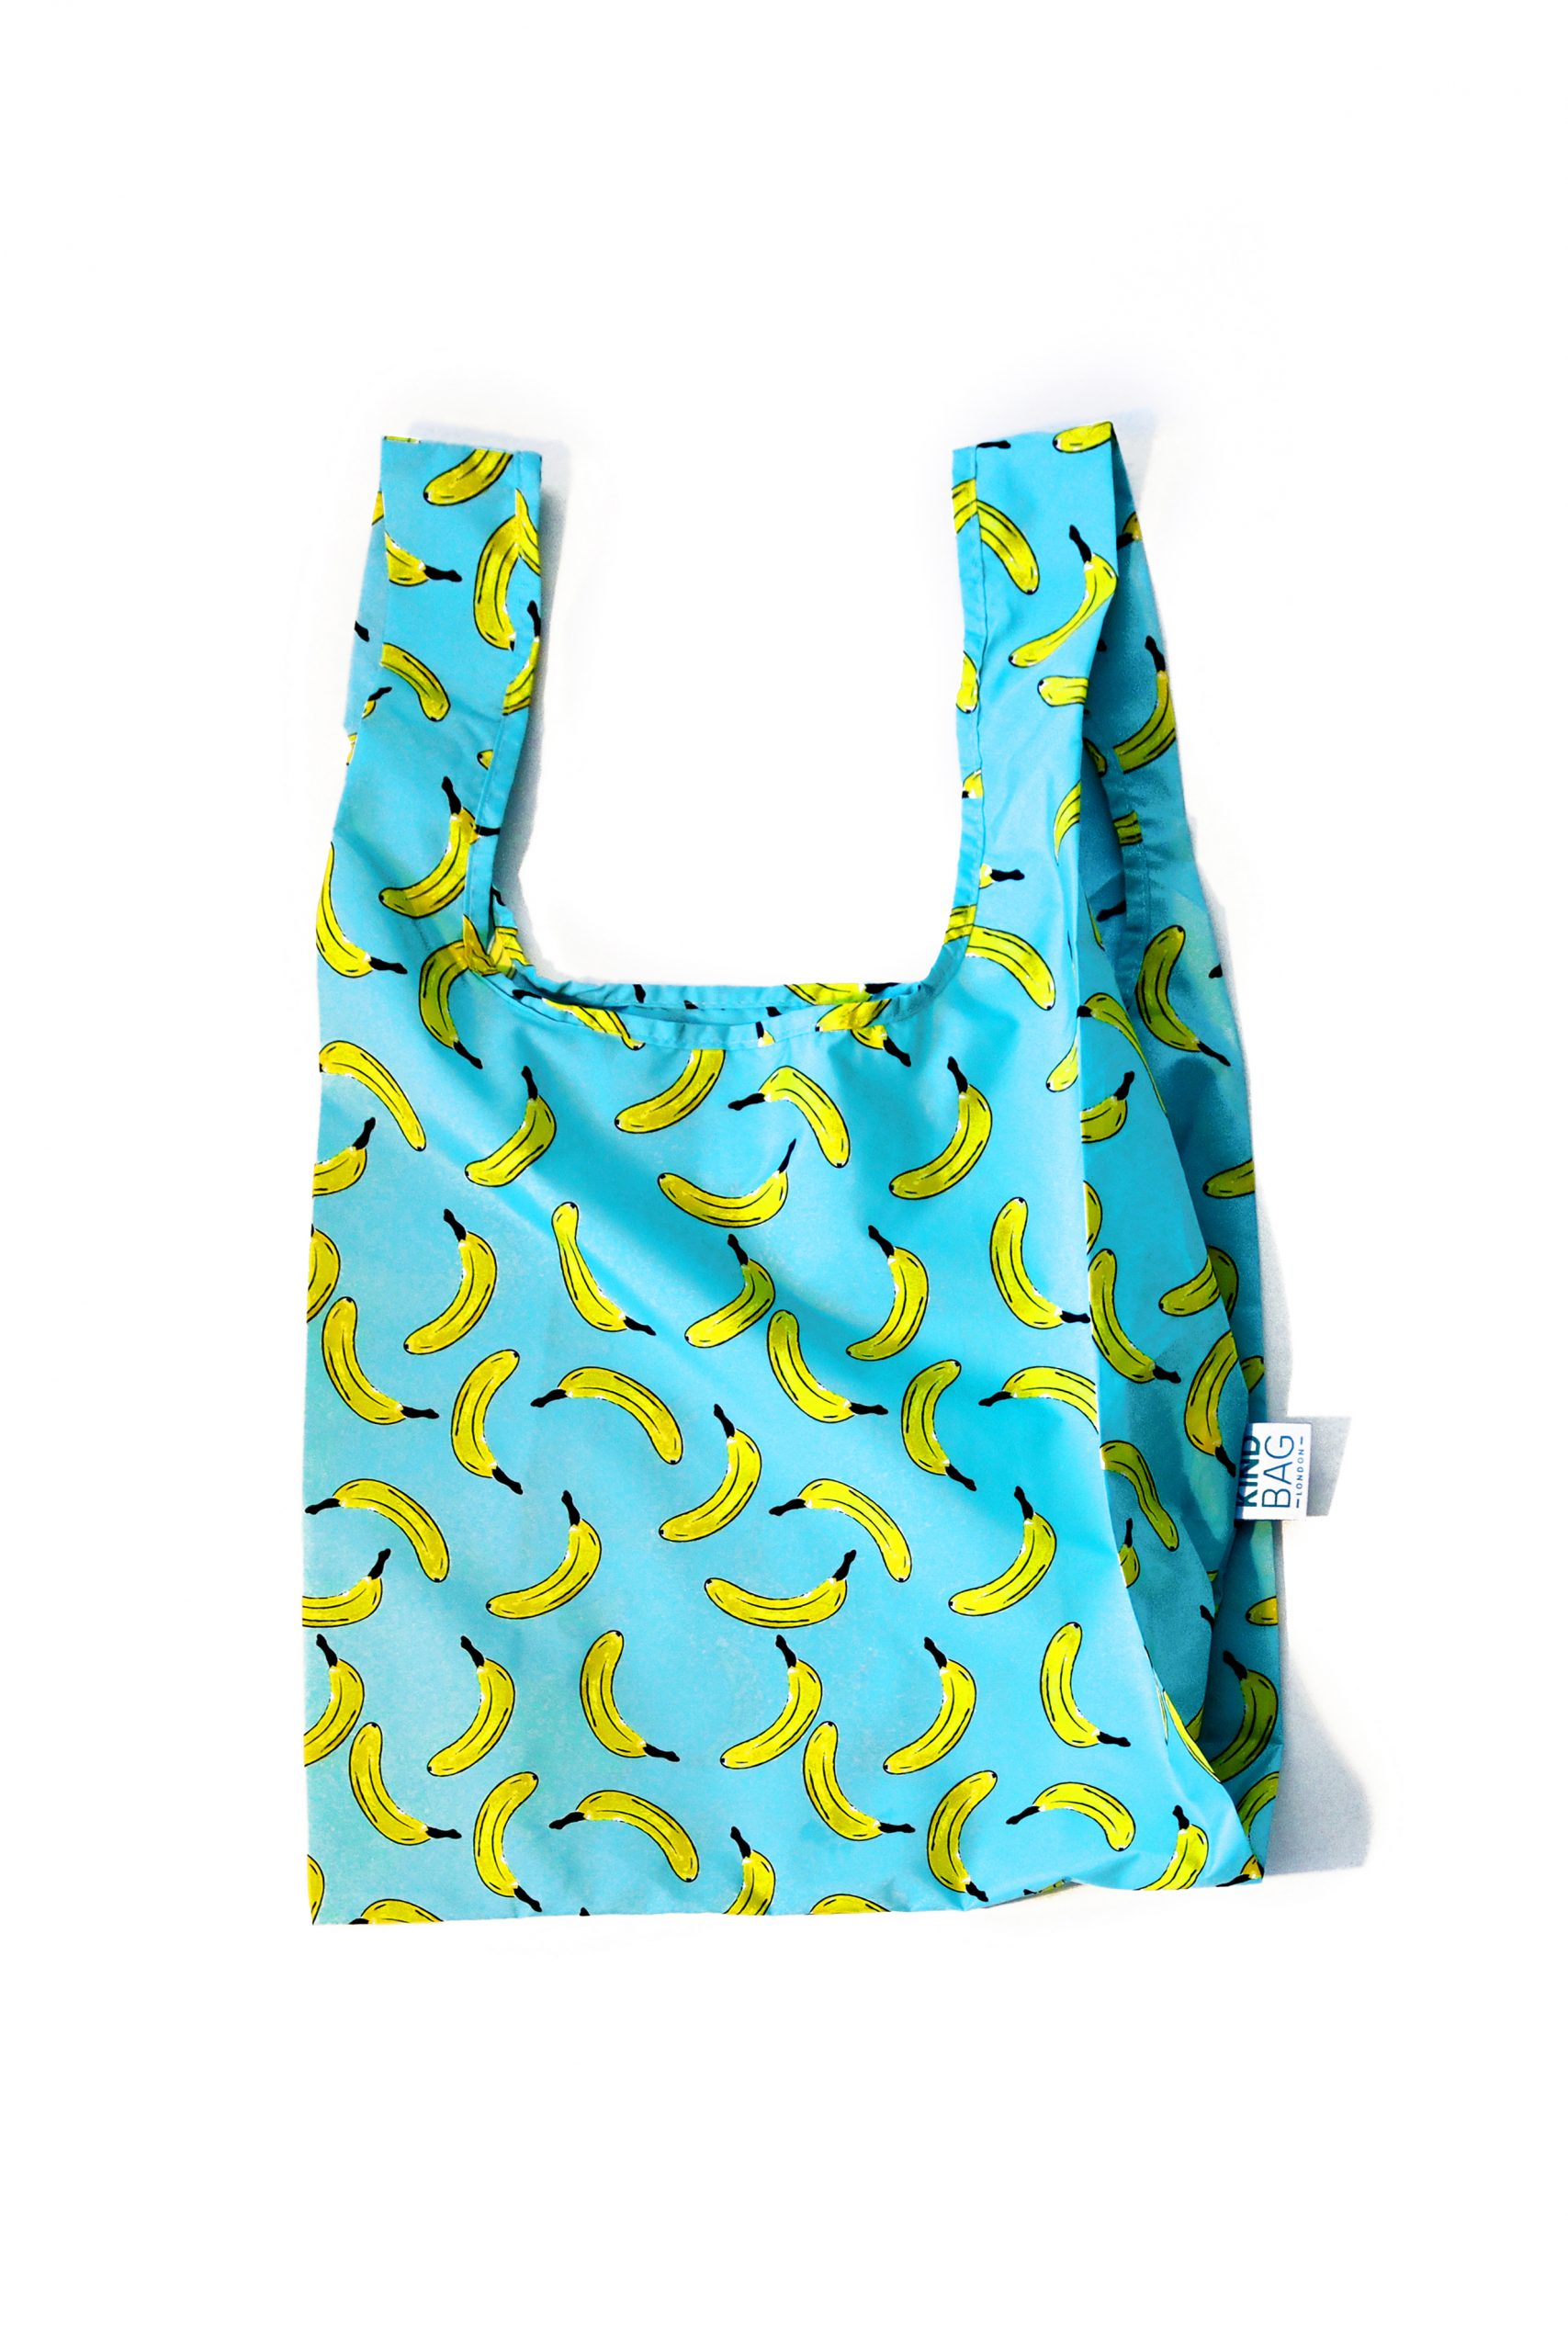 KIND BAG - BANANA - 100% recycled reusable bag - Balmidor Online Shop